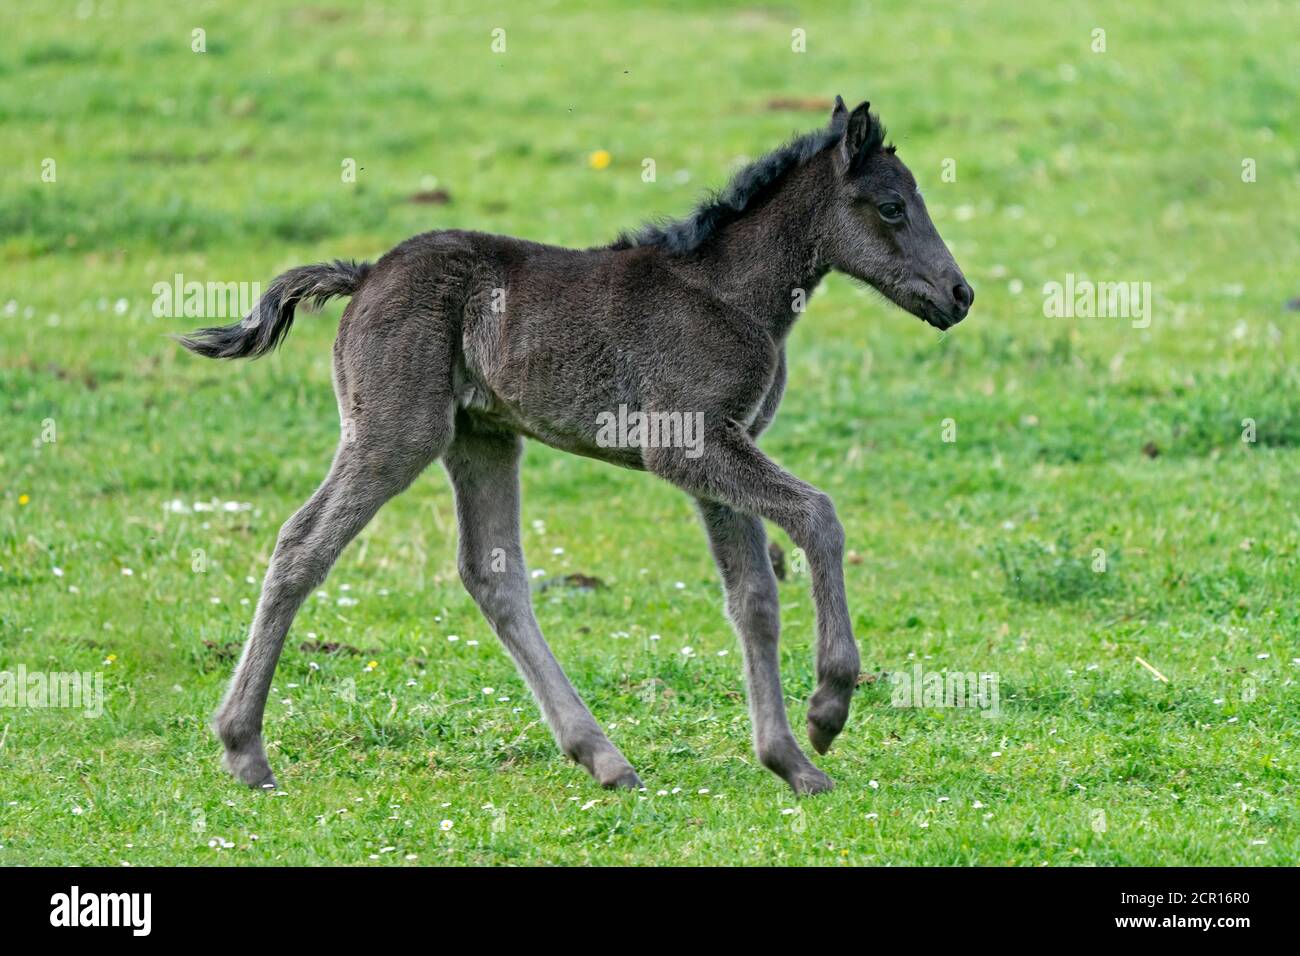 Horses, foals, Germany Stock Photo